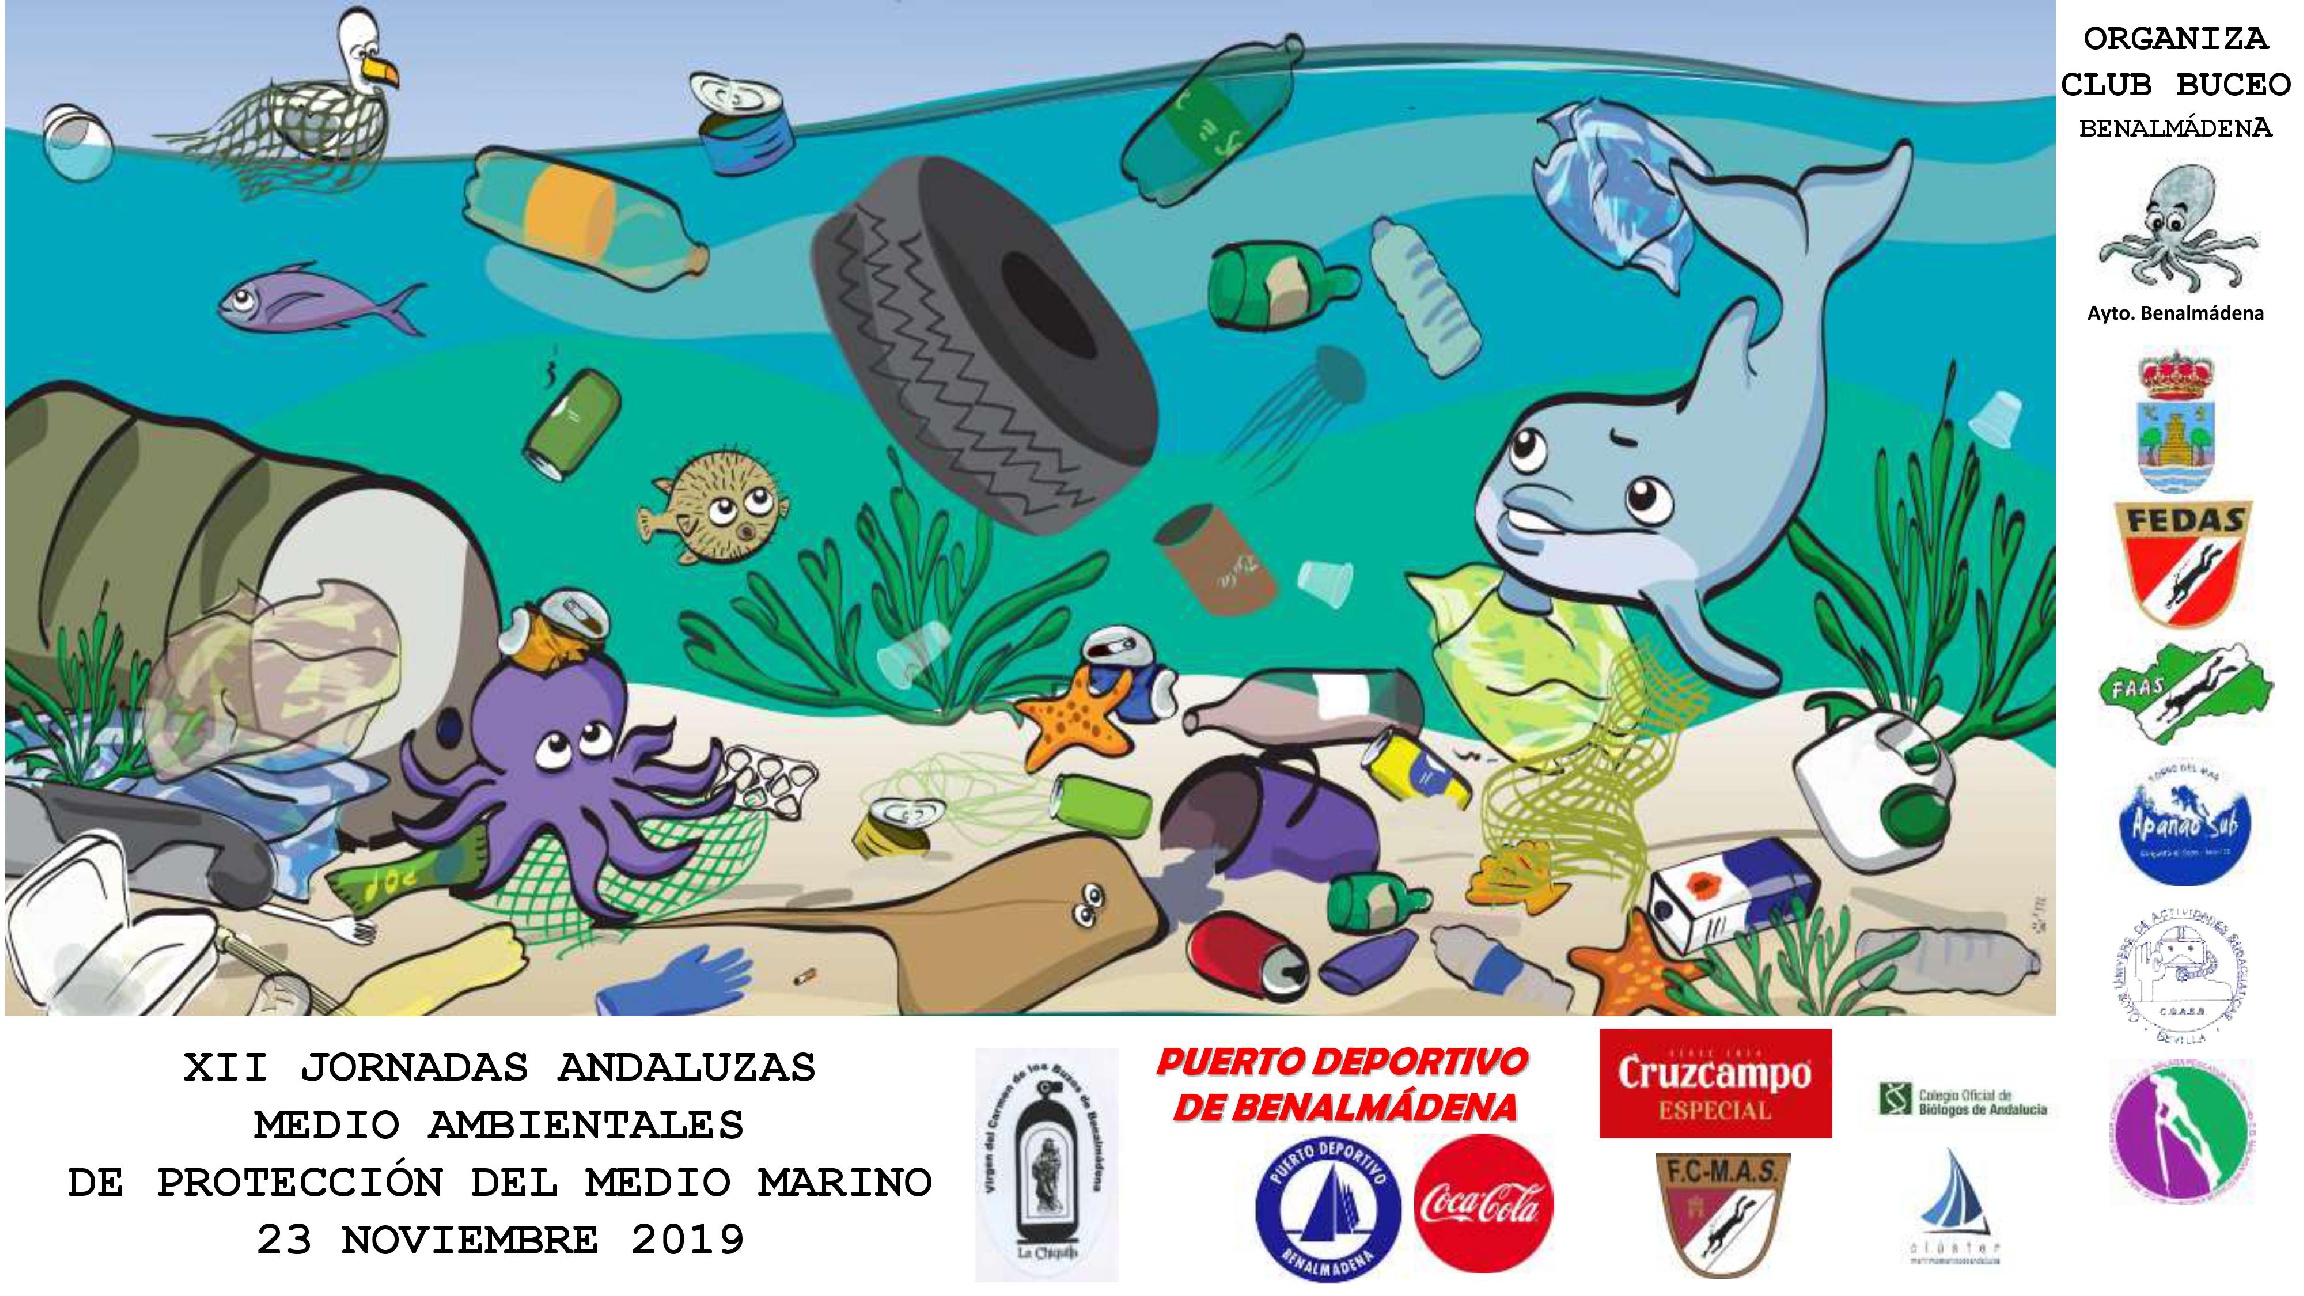 XII Jornadas Andaluzas Medioambientales en el Puerto Deportivo de Benalmádena